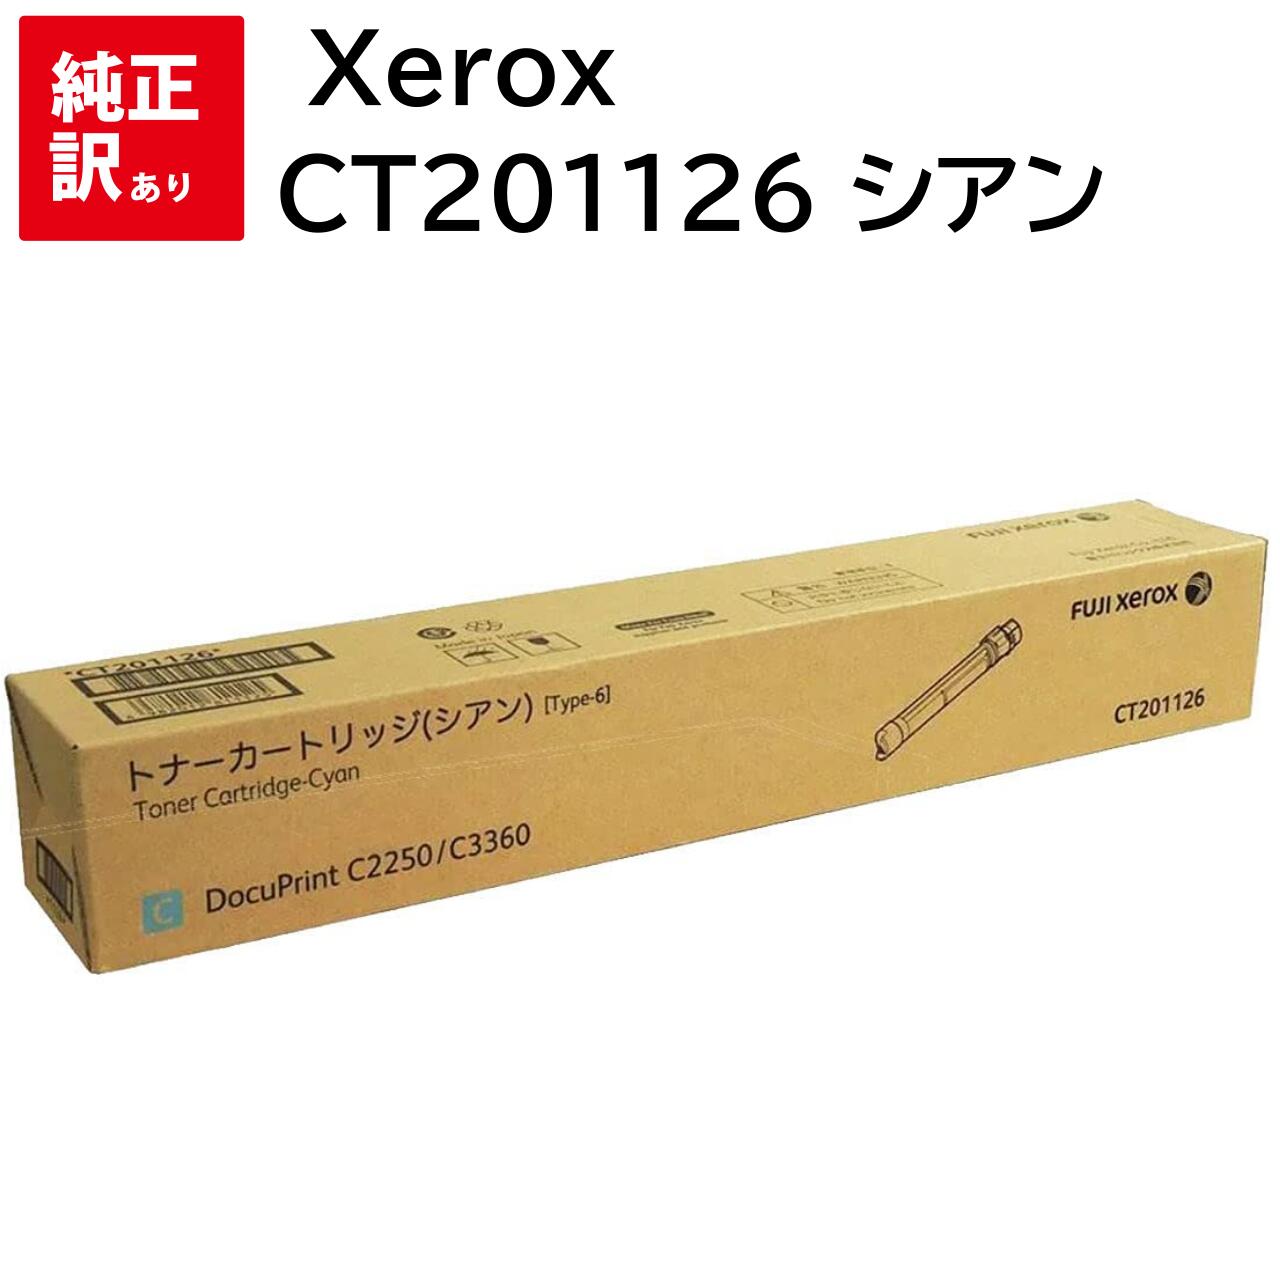 訳あり 新品 Xerox CT201126 シアン ゼロックス トナー カートリッジ パソコン 周辺機器 PCサプライ 消耗品 プリンター メーカー 純正 送料無料 4982012811125 DocuPrint C3360 C2250